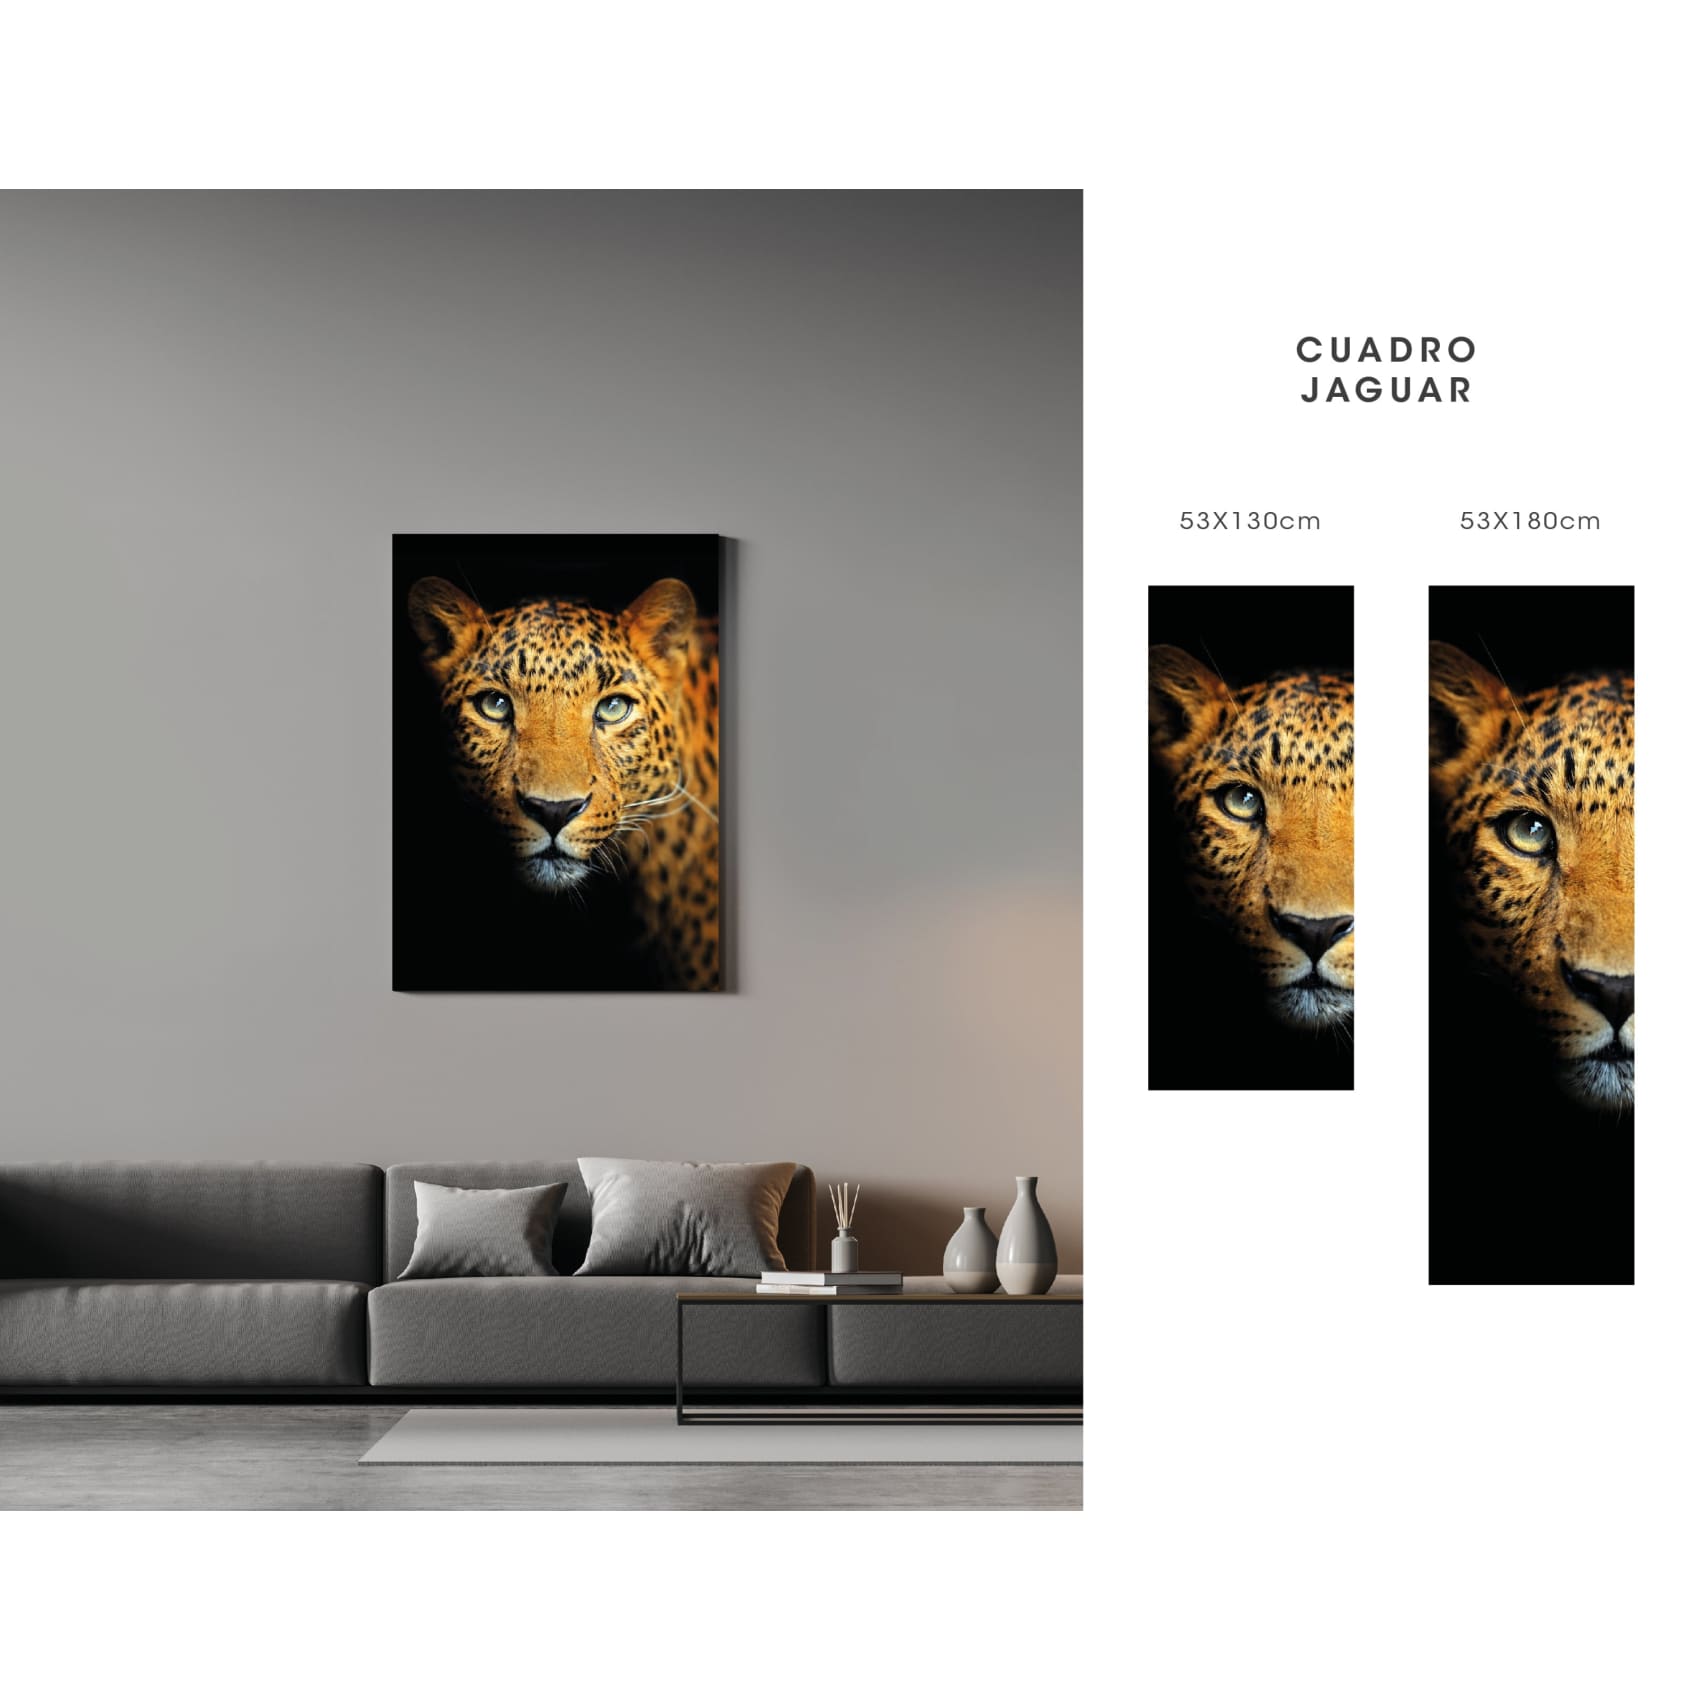 cuadro decorativo, decoración, sala, estudio, habitación, animal, Jaguar